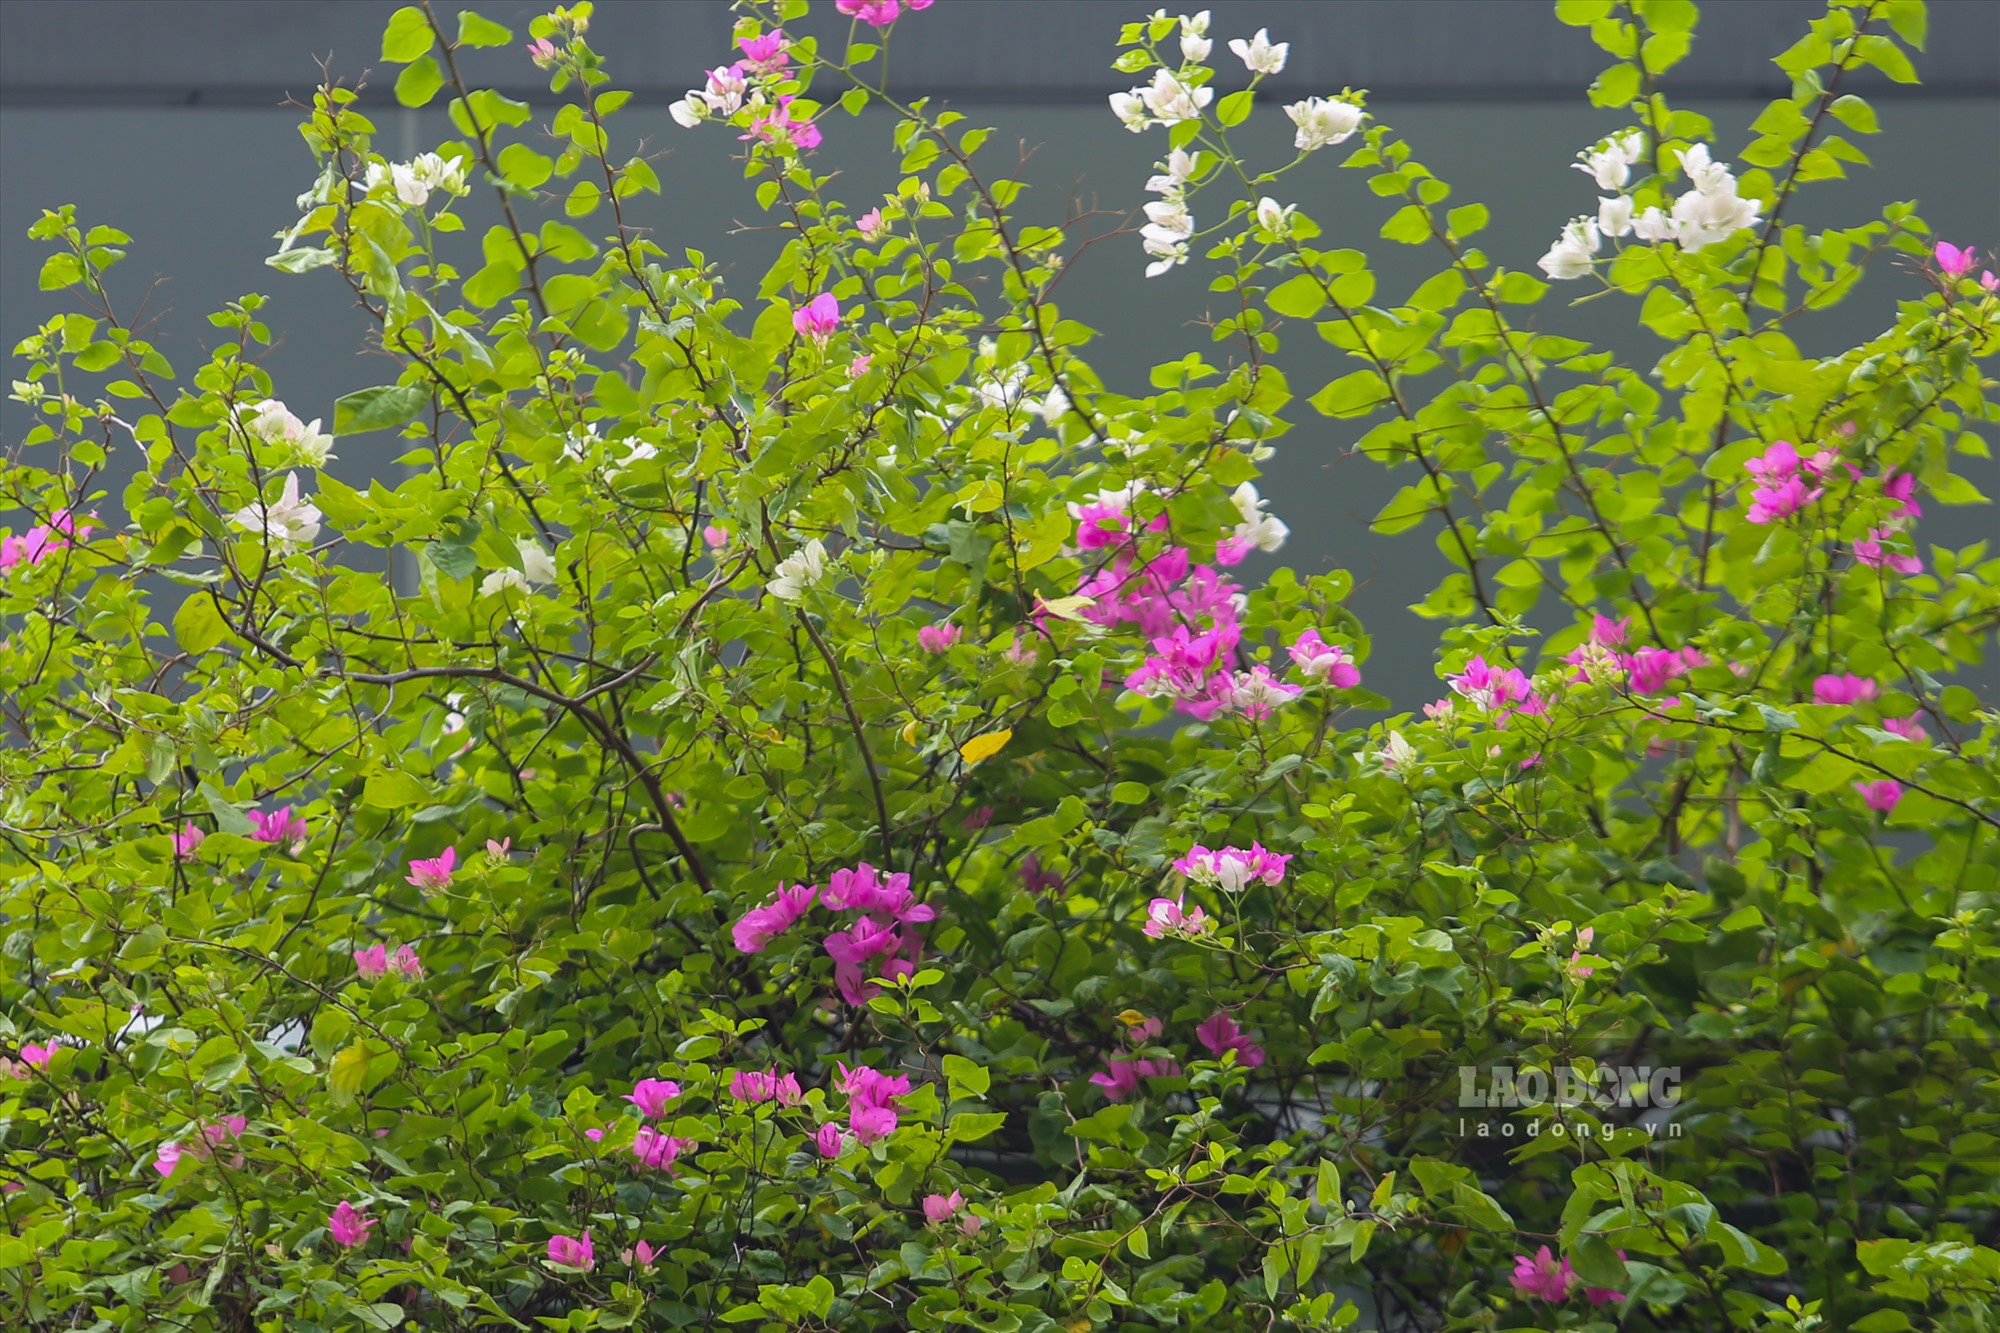 Cây xanh, hoa được trồng tại các nhà ga dọc tuyến khá xanh tốt, trong đó chủ yếu là hoa giấy.